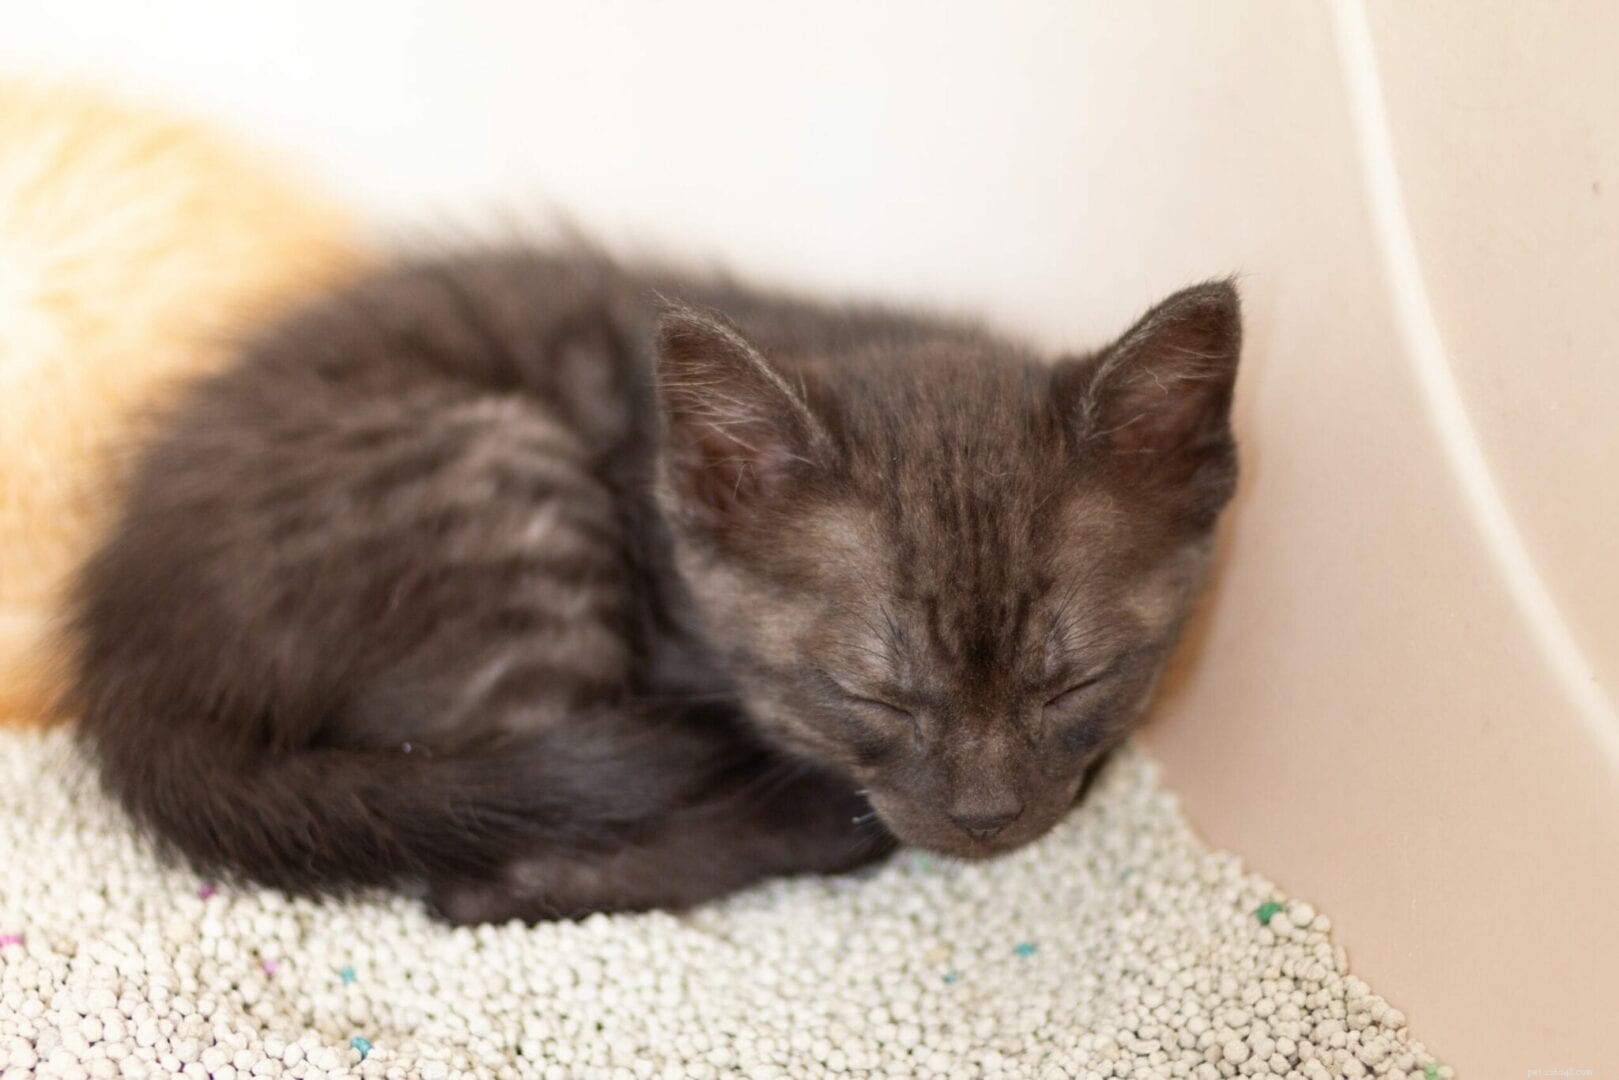 Pourquoi les chats dorment-ils parfois dans des bacs à litière ?